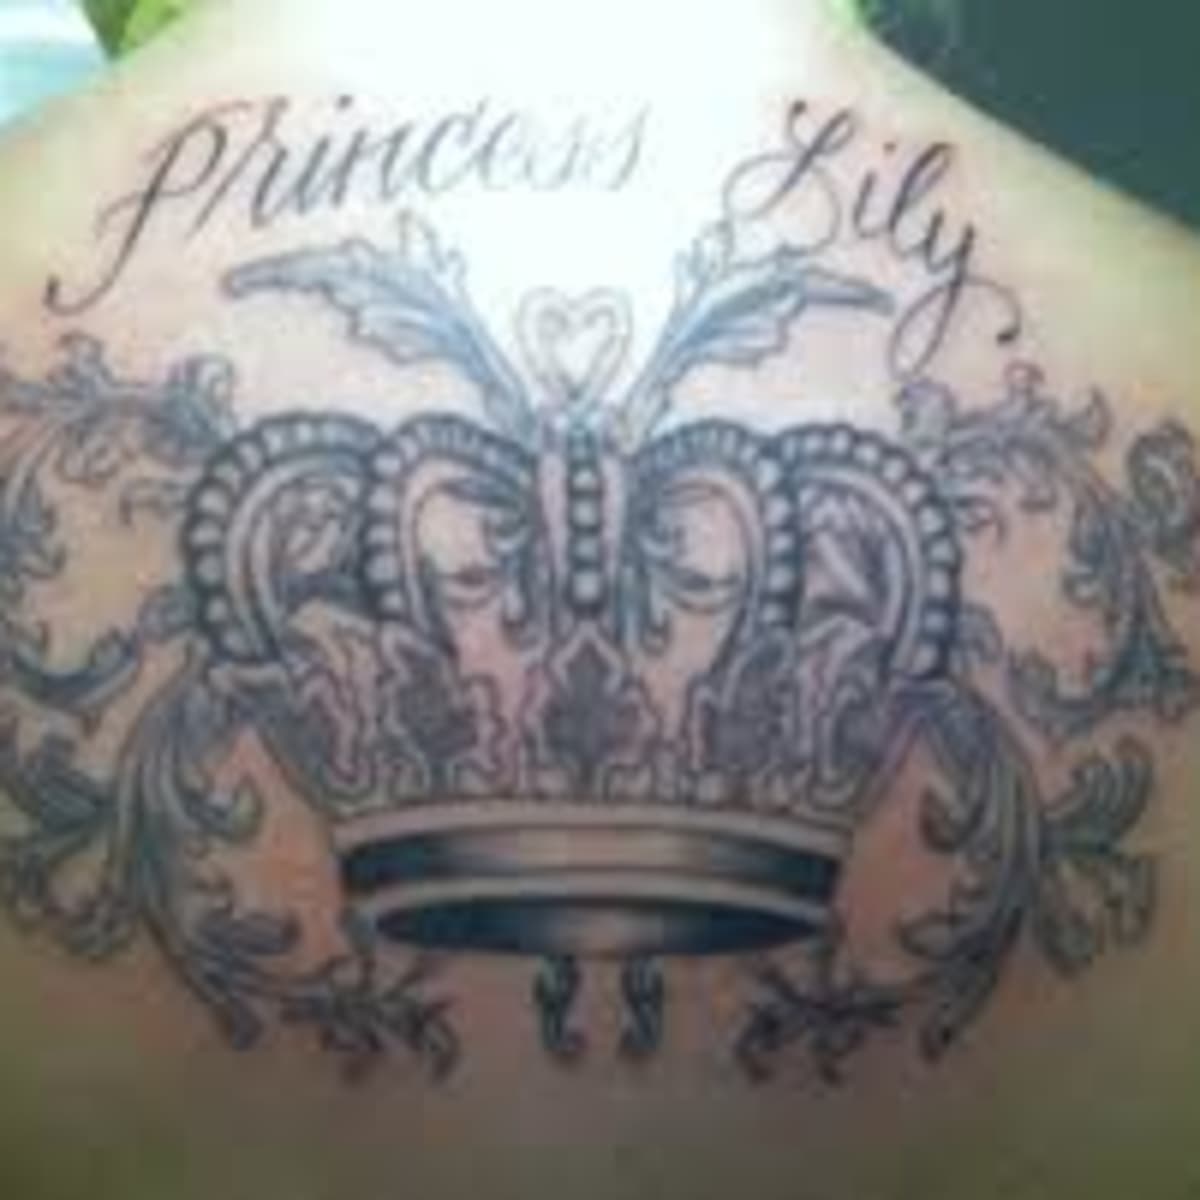 Crown Tattoo Images  Free Download on Freepik